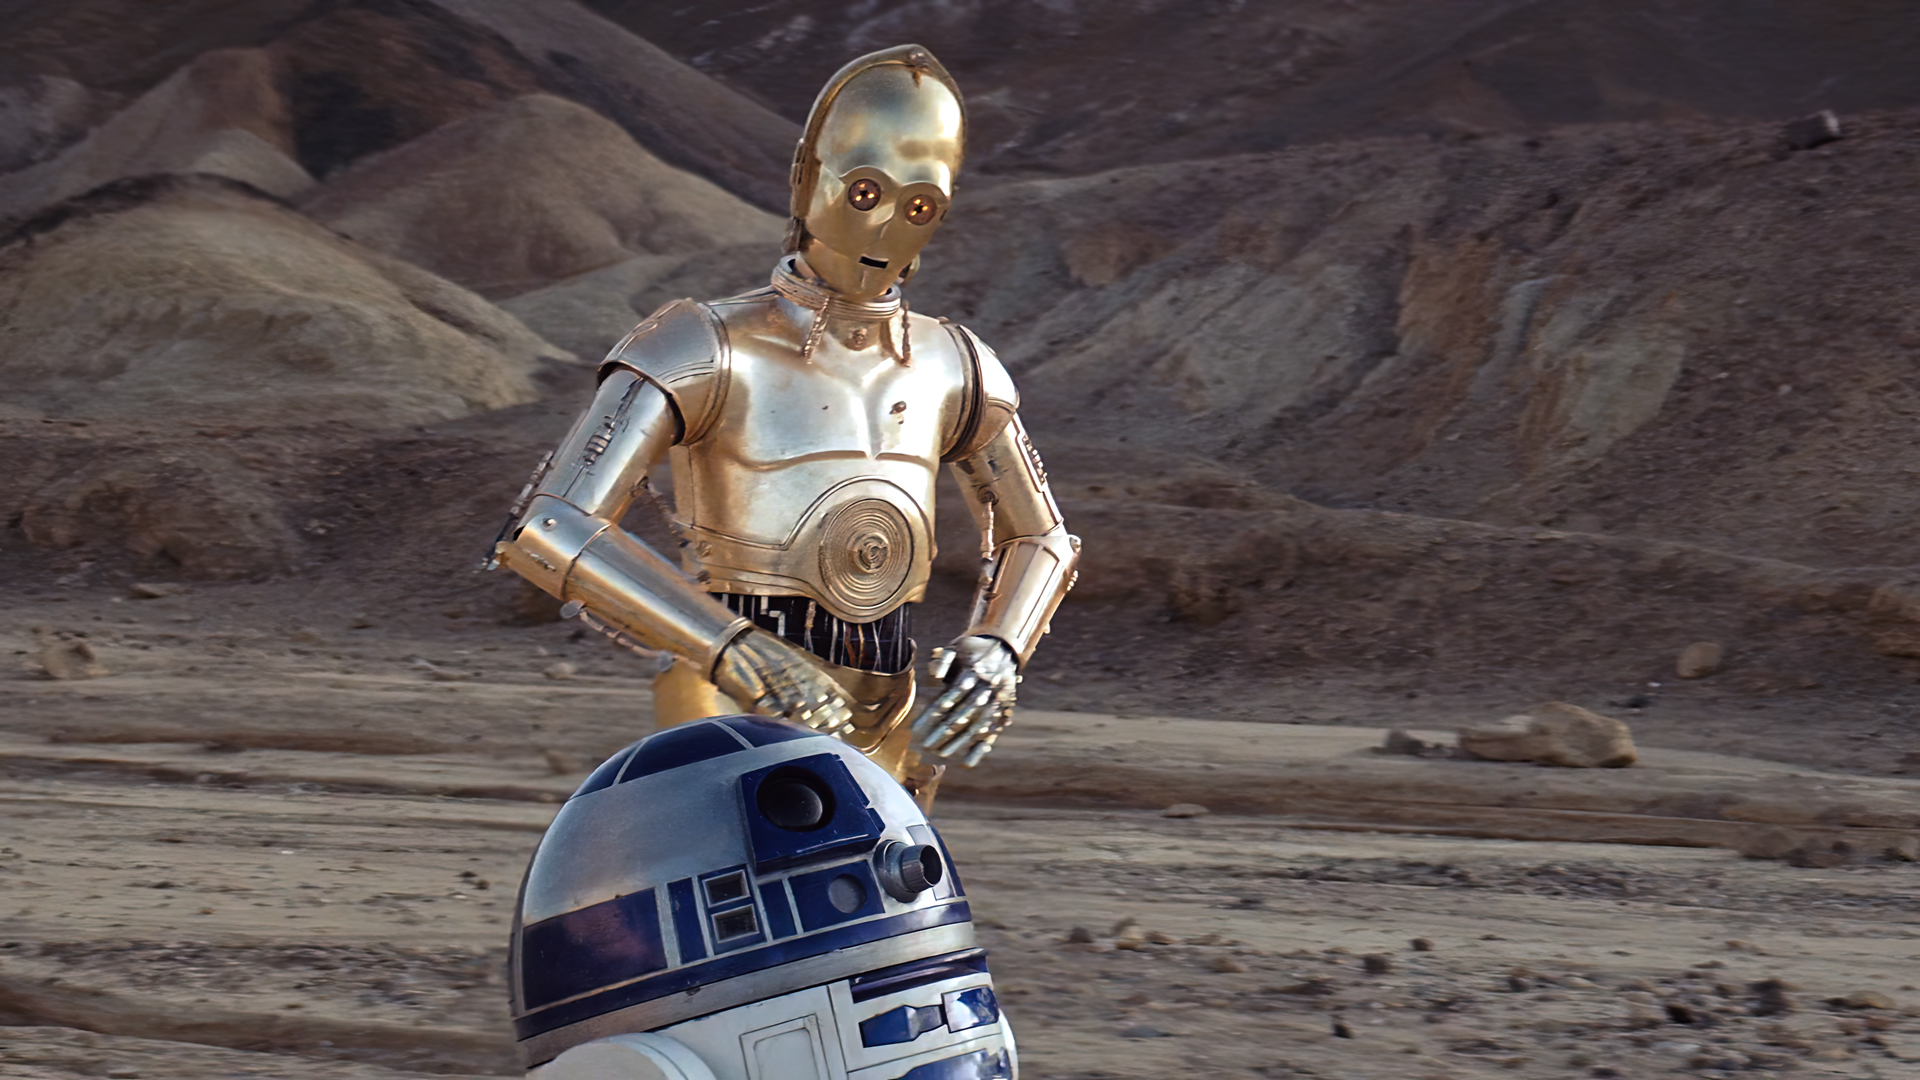 General 1920x1080 Star Wars: Episode VI - The Return of the Jedi movies film stills Star Wars C-3PO R2-D2 Star Wars Droids rocks Tatooine robot